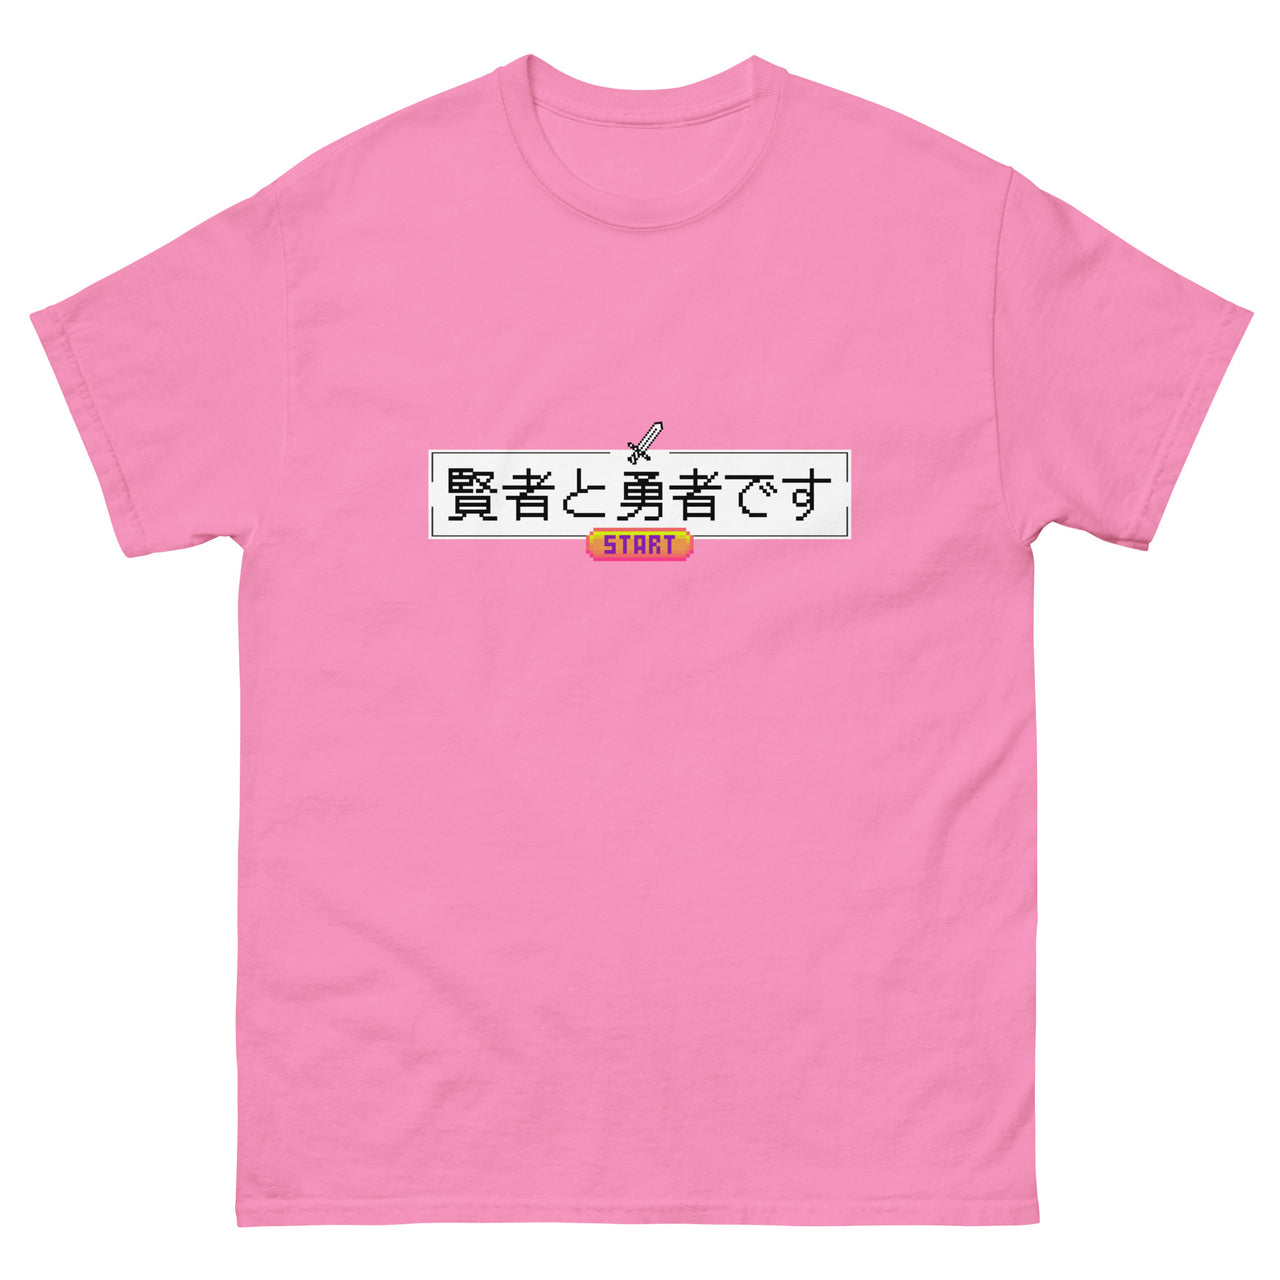 Press Start Wise Hero Short-Sleeve Unisex Japanese-Themed T-Shirt